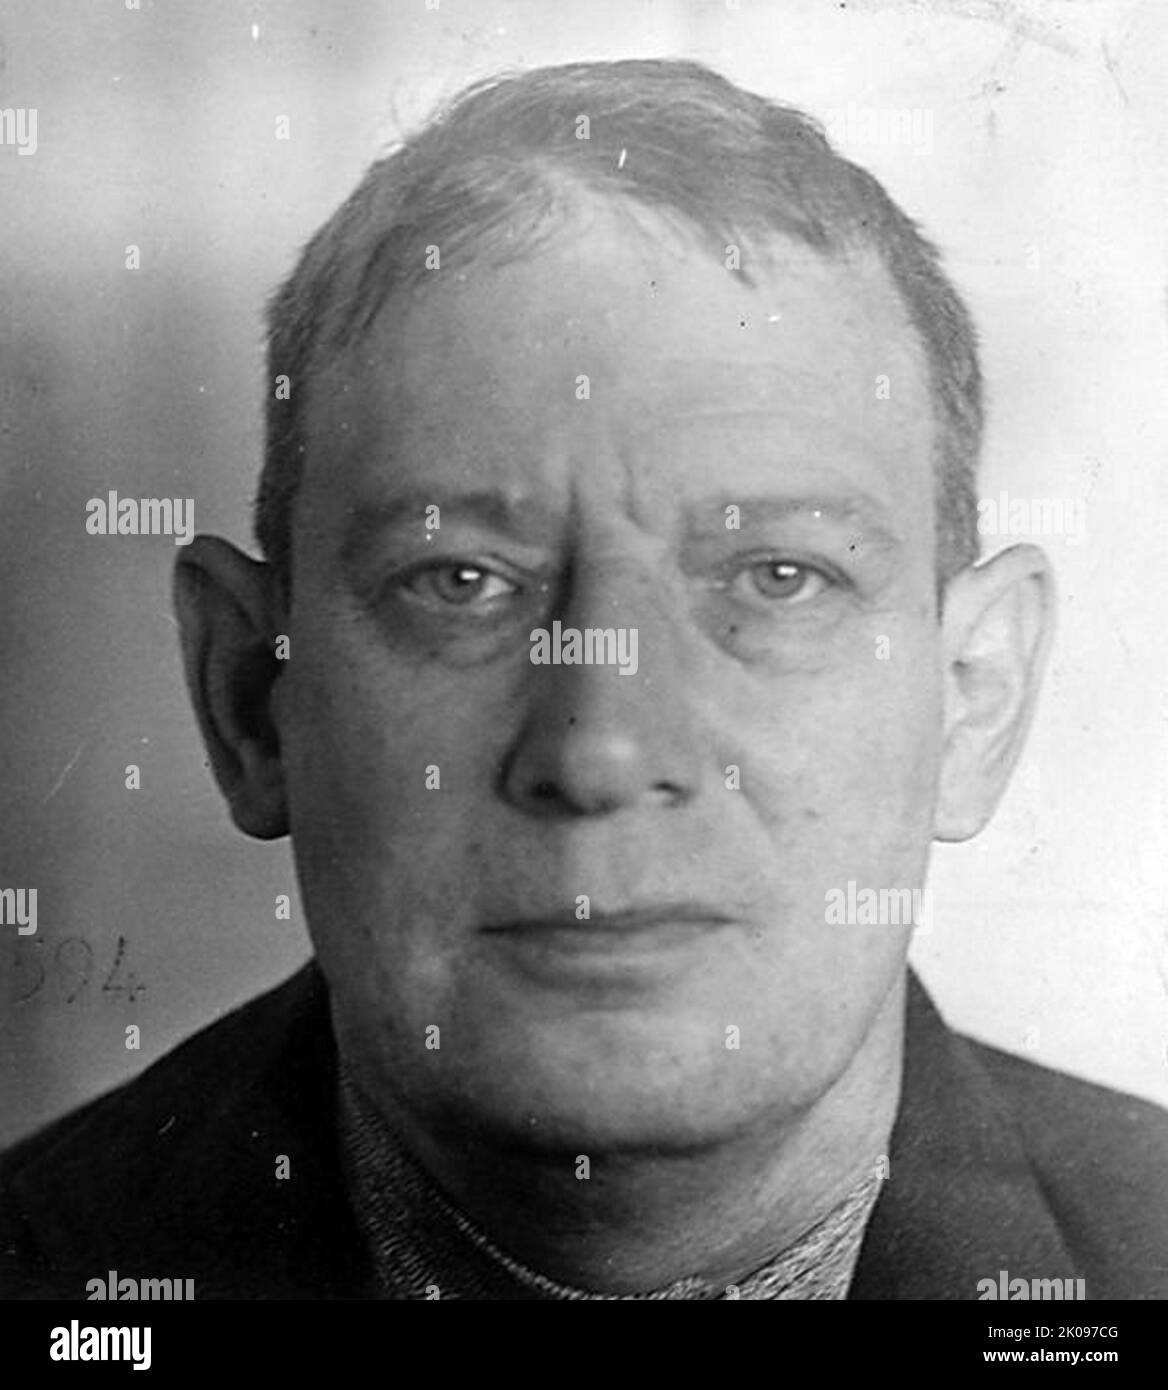 Robert Franklin Stroud (28. Januar 1890 - 21. November 1963), bekannt als der "Birdman of Alcatraz", war ein verurteilter Mörder, amerikanischer Bundesgefangener und Autor, der als einer der berüchtigtsten Verbrecher in den Vereinigten Staaten zitiert wurde. Während seiner Zeit in der Strafanstalt Leavenworth züchtet und verkauft er Vögel und wurde ein angesehener Ornithologe. Von 1942 bis 1959 wurde er in Alcatraz inhaftiert, Stroud wurde nie aus dem Bundesgefängnis entlassen. Stockfoto